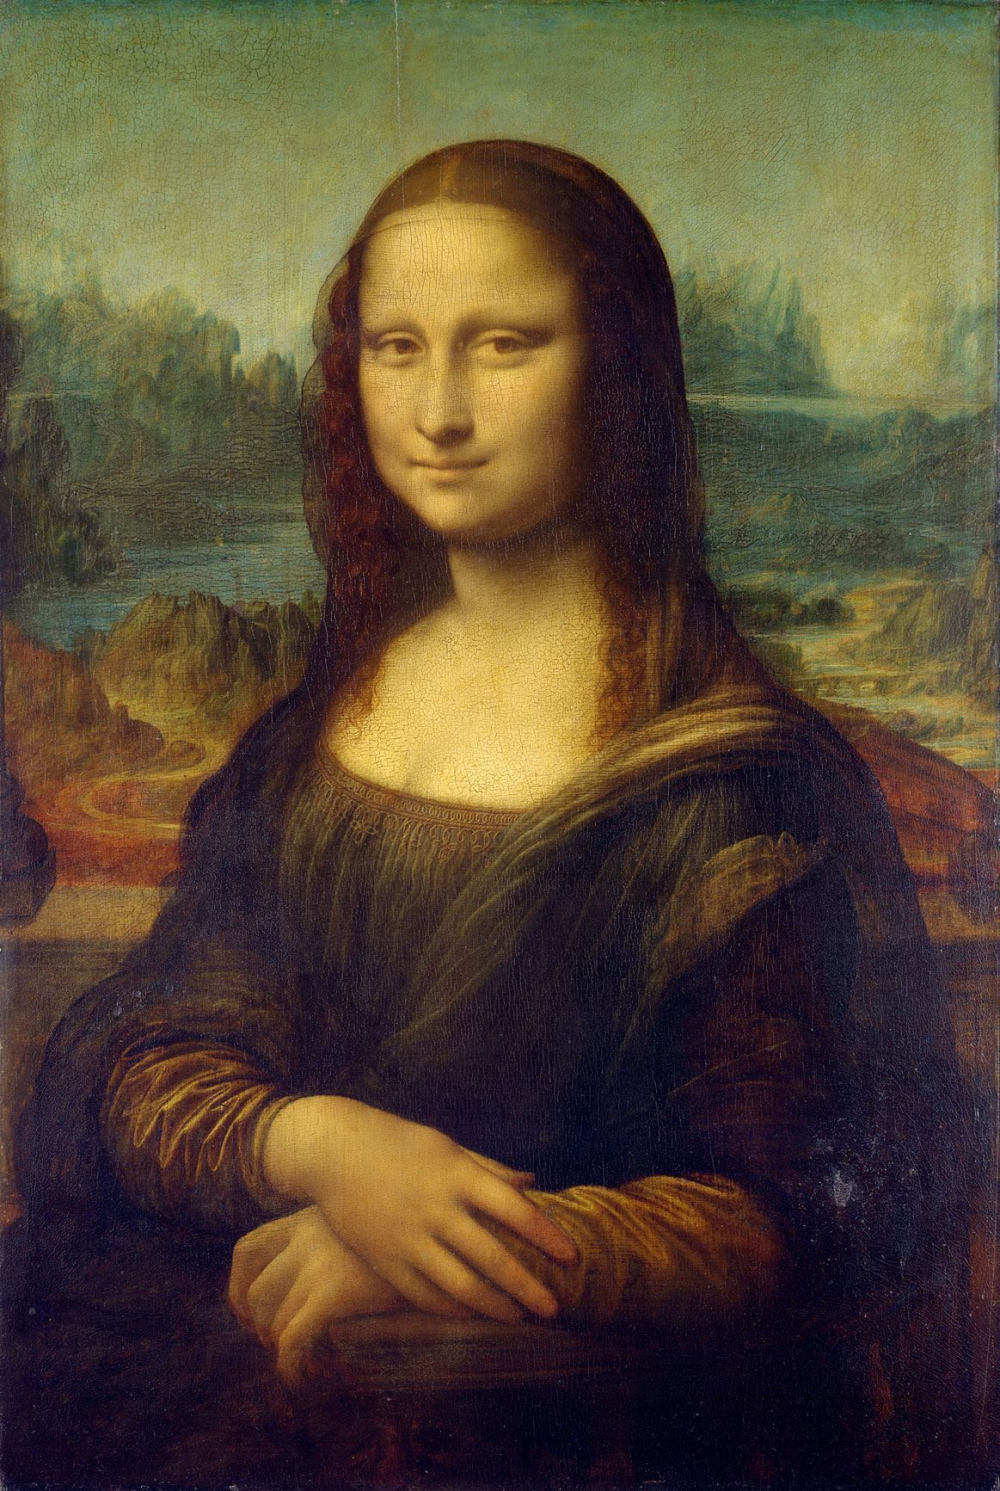 Mona lisa tablosunun sırrını bilen var mı?